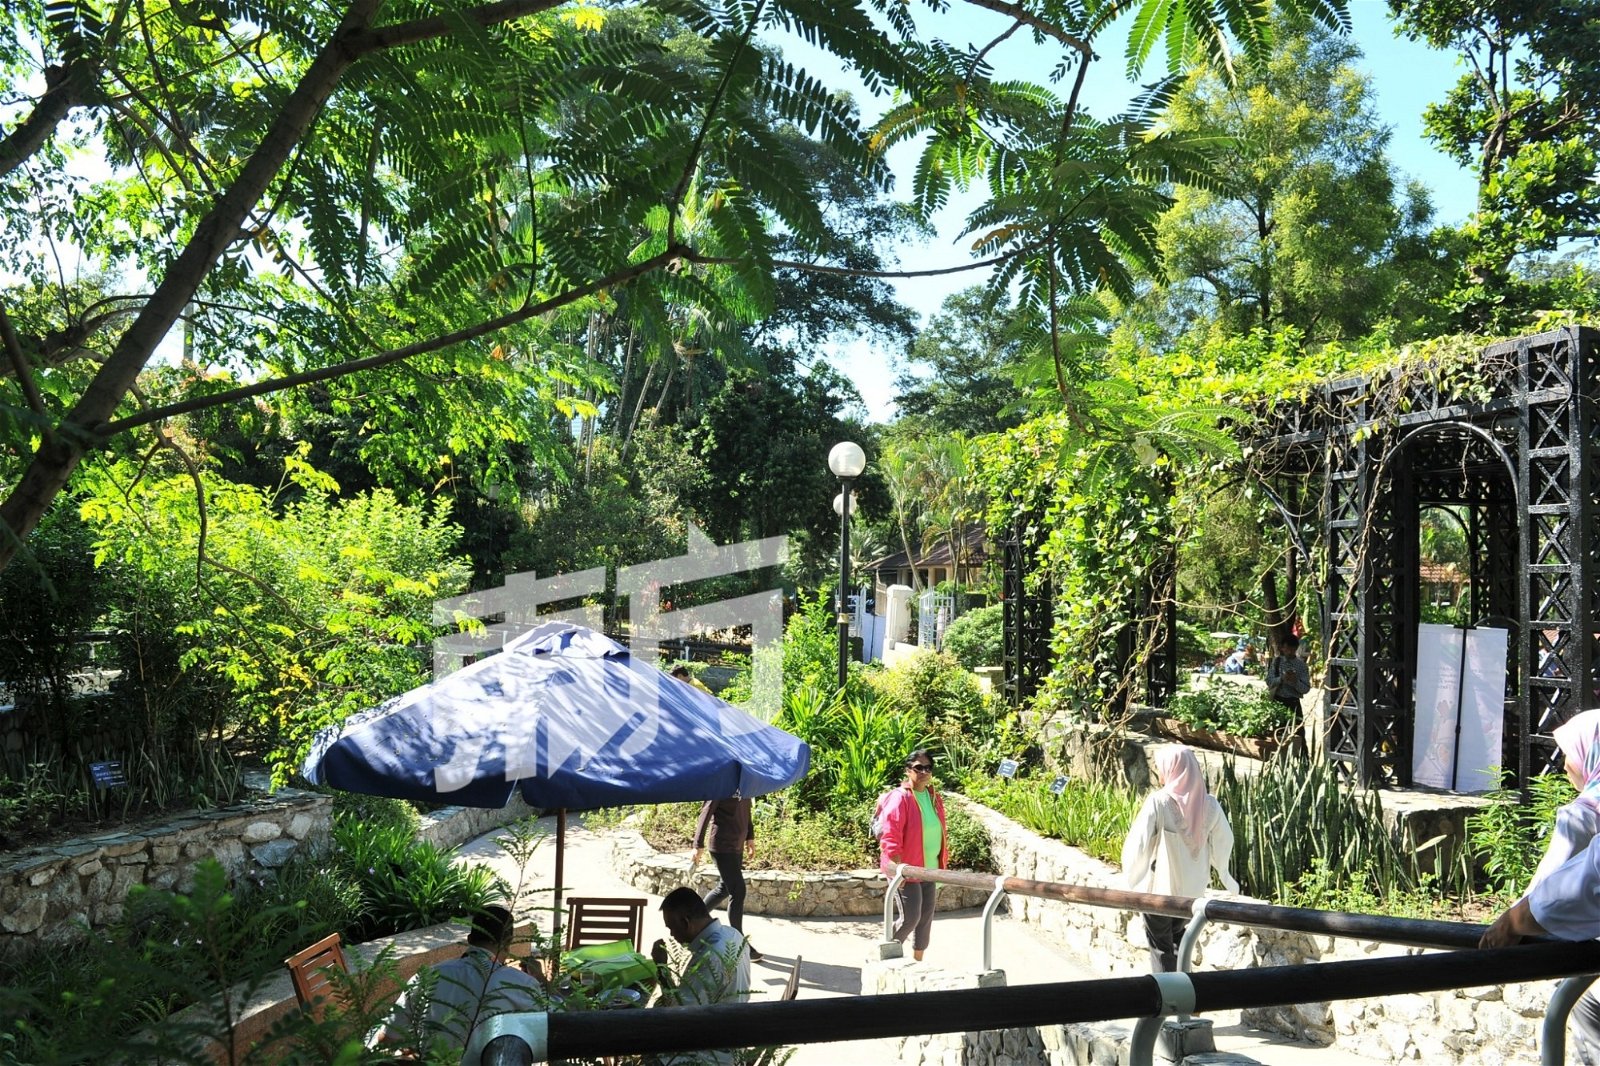 隆市政局为提高阅读便利性以及加深人民对植物的了解，有意为吉隆坡植物园迎向电子化，让长期居住在城市的民众或观光客，能够透过电子产品，获得植物品种的资讯以及药用价值。（摄影：连国强）